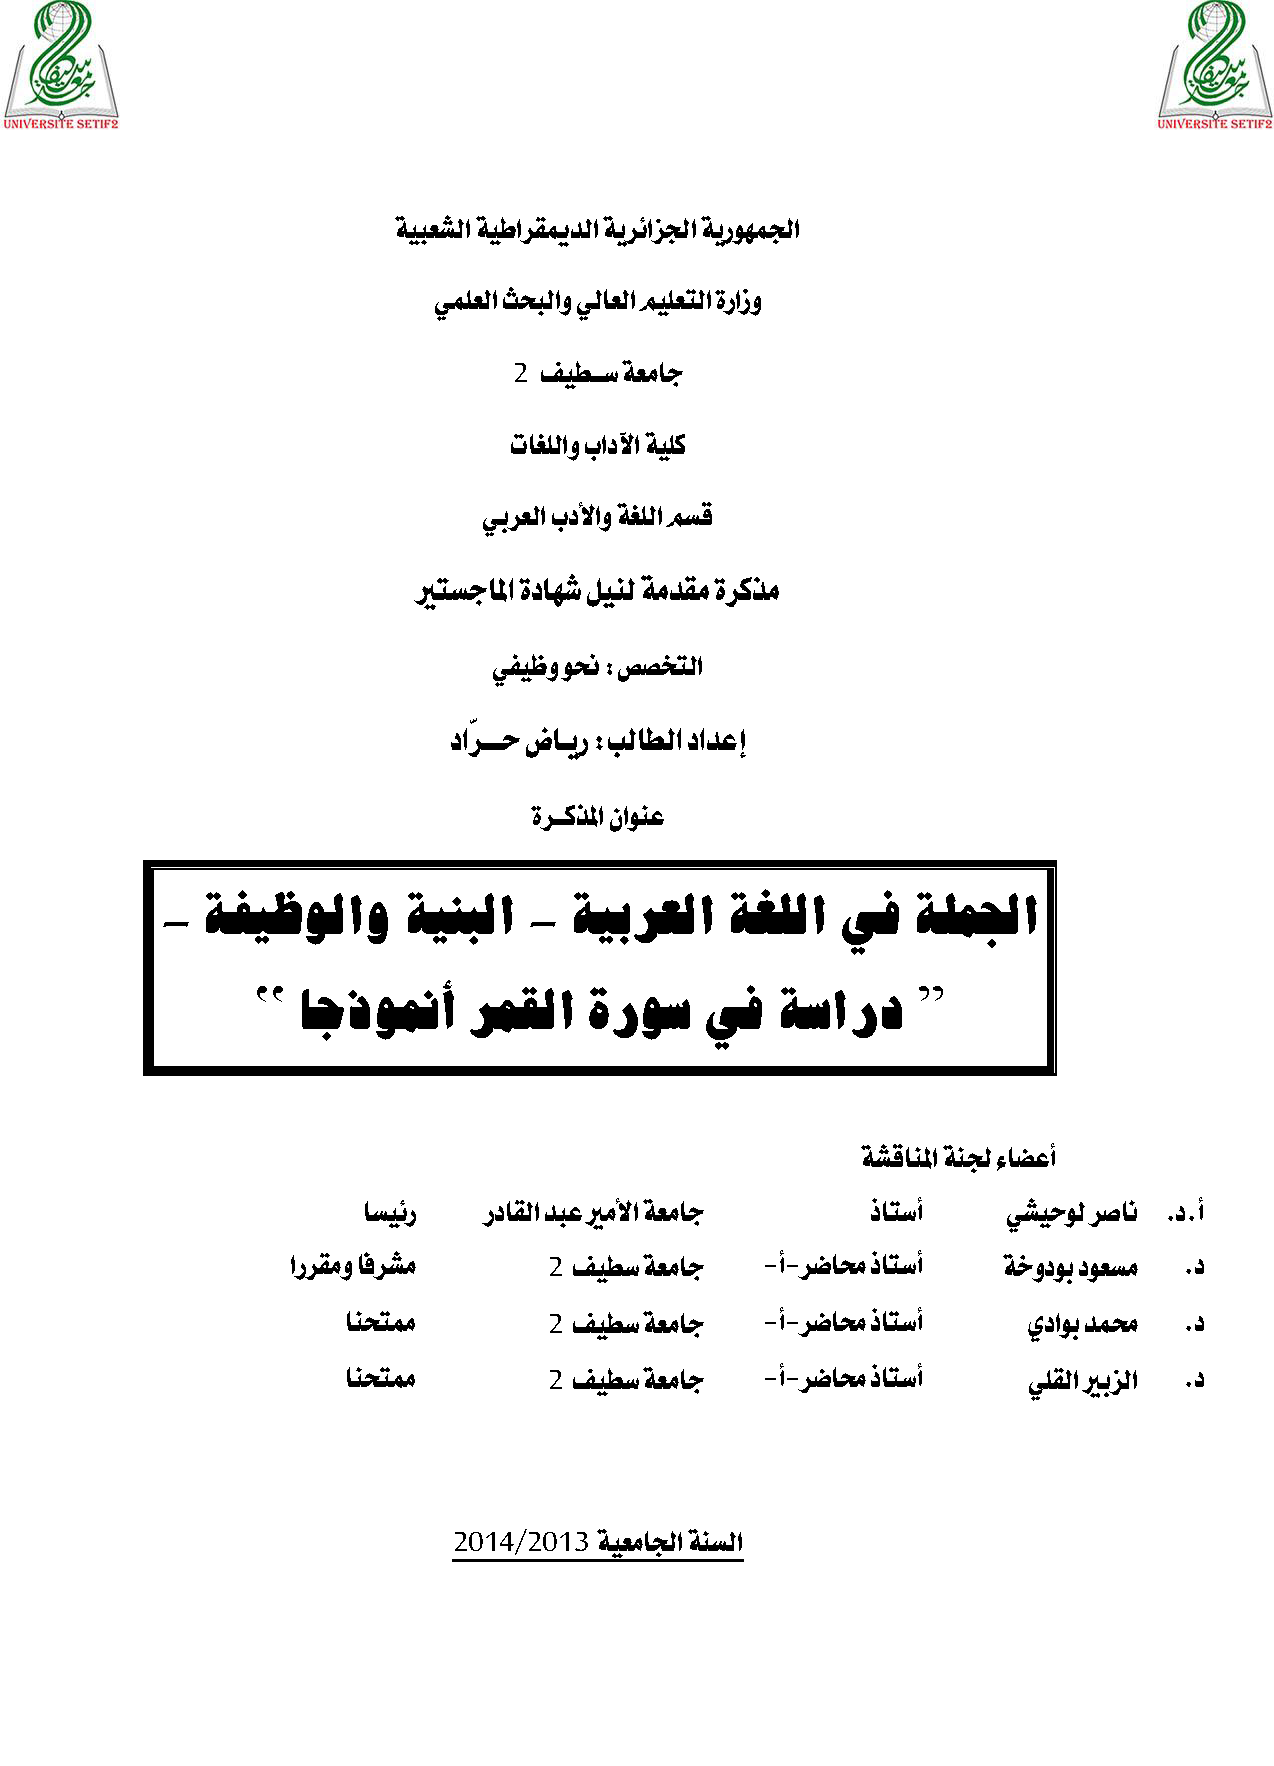 ❞ مذكّرة الجملة في اللغة العربية - البنية والوظيفة - (دراسة في سورة القمر أنموذجًا) ❝ 